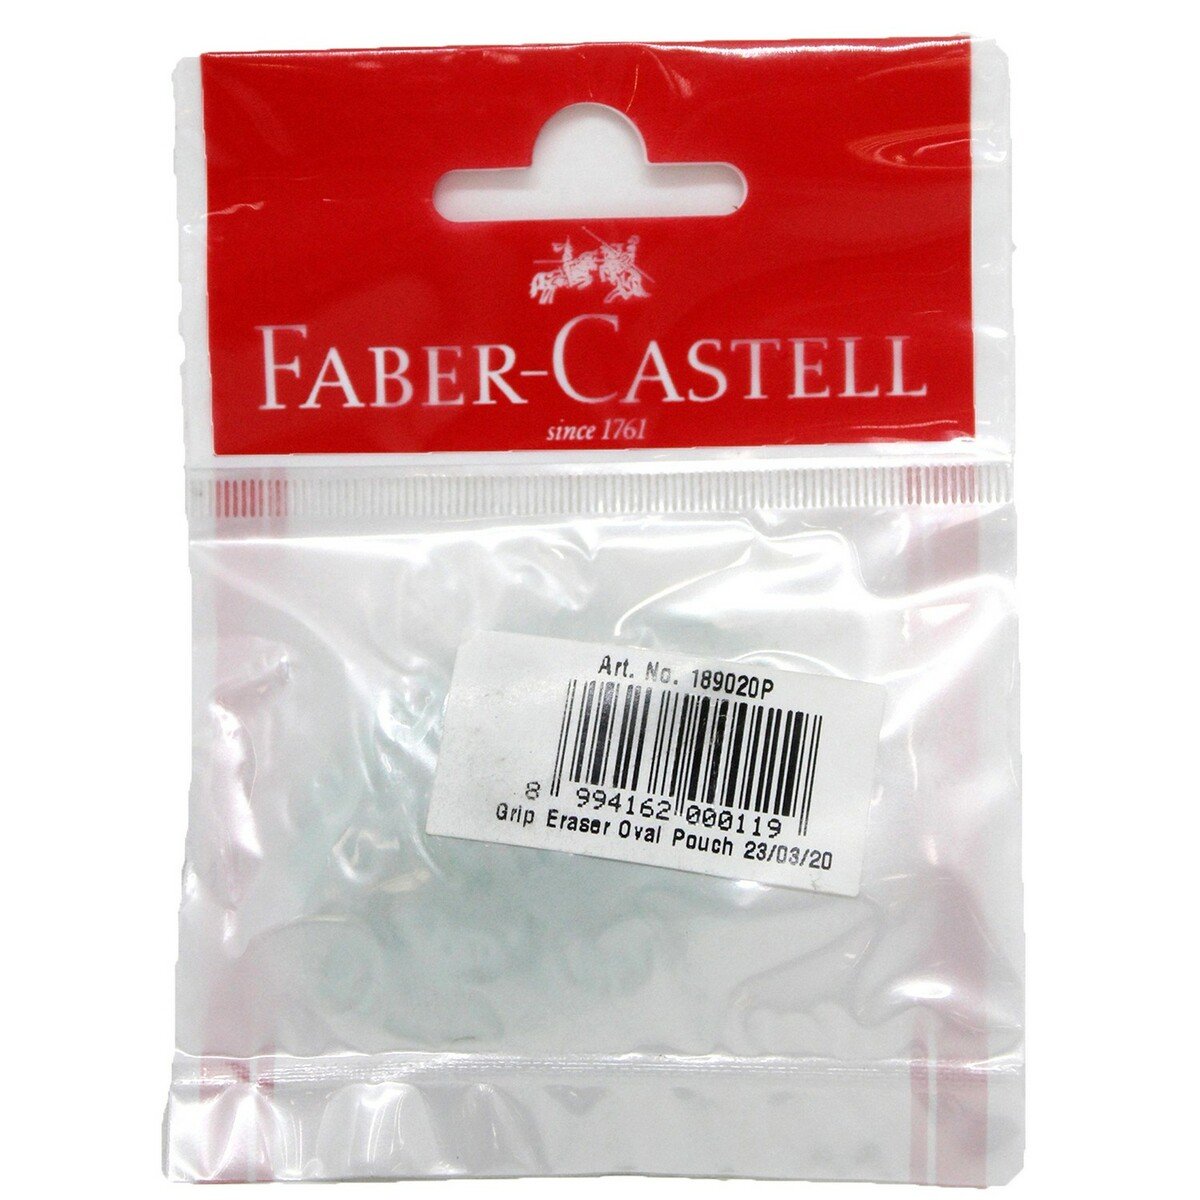 Faber-Castell Grip Eraser